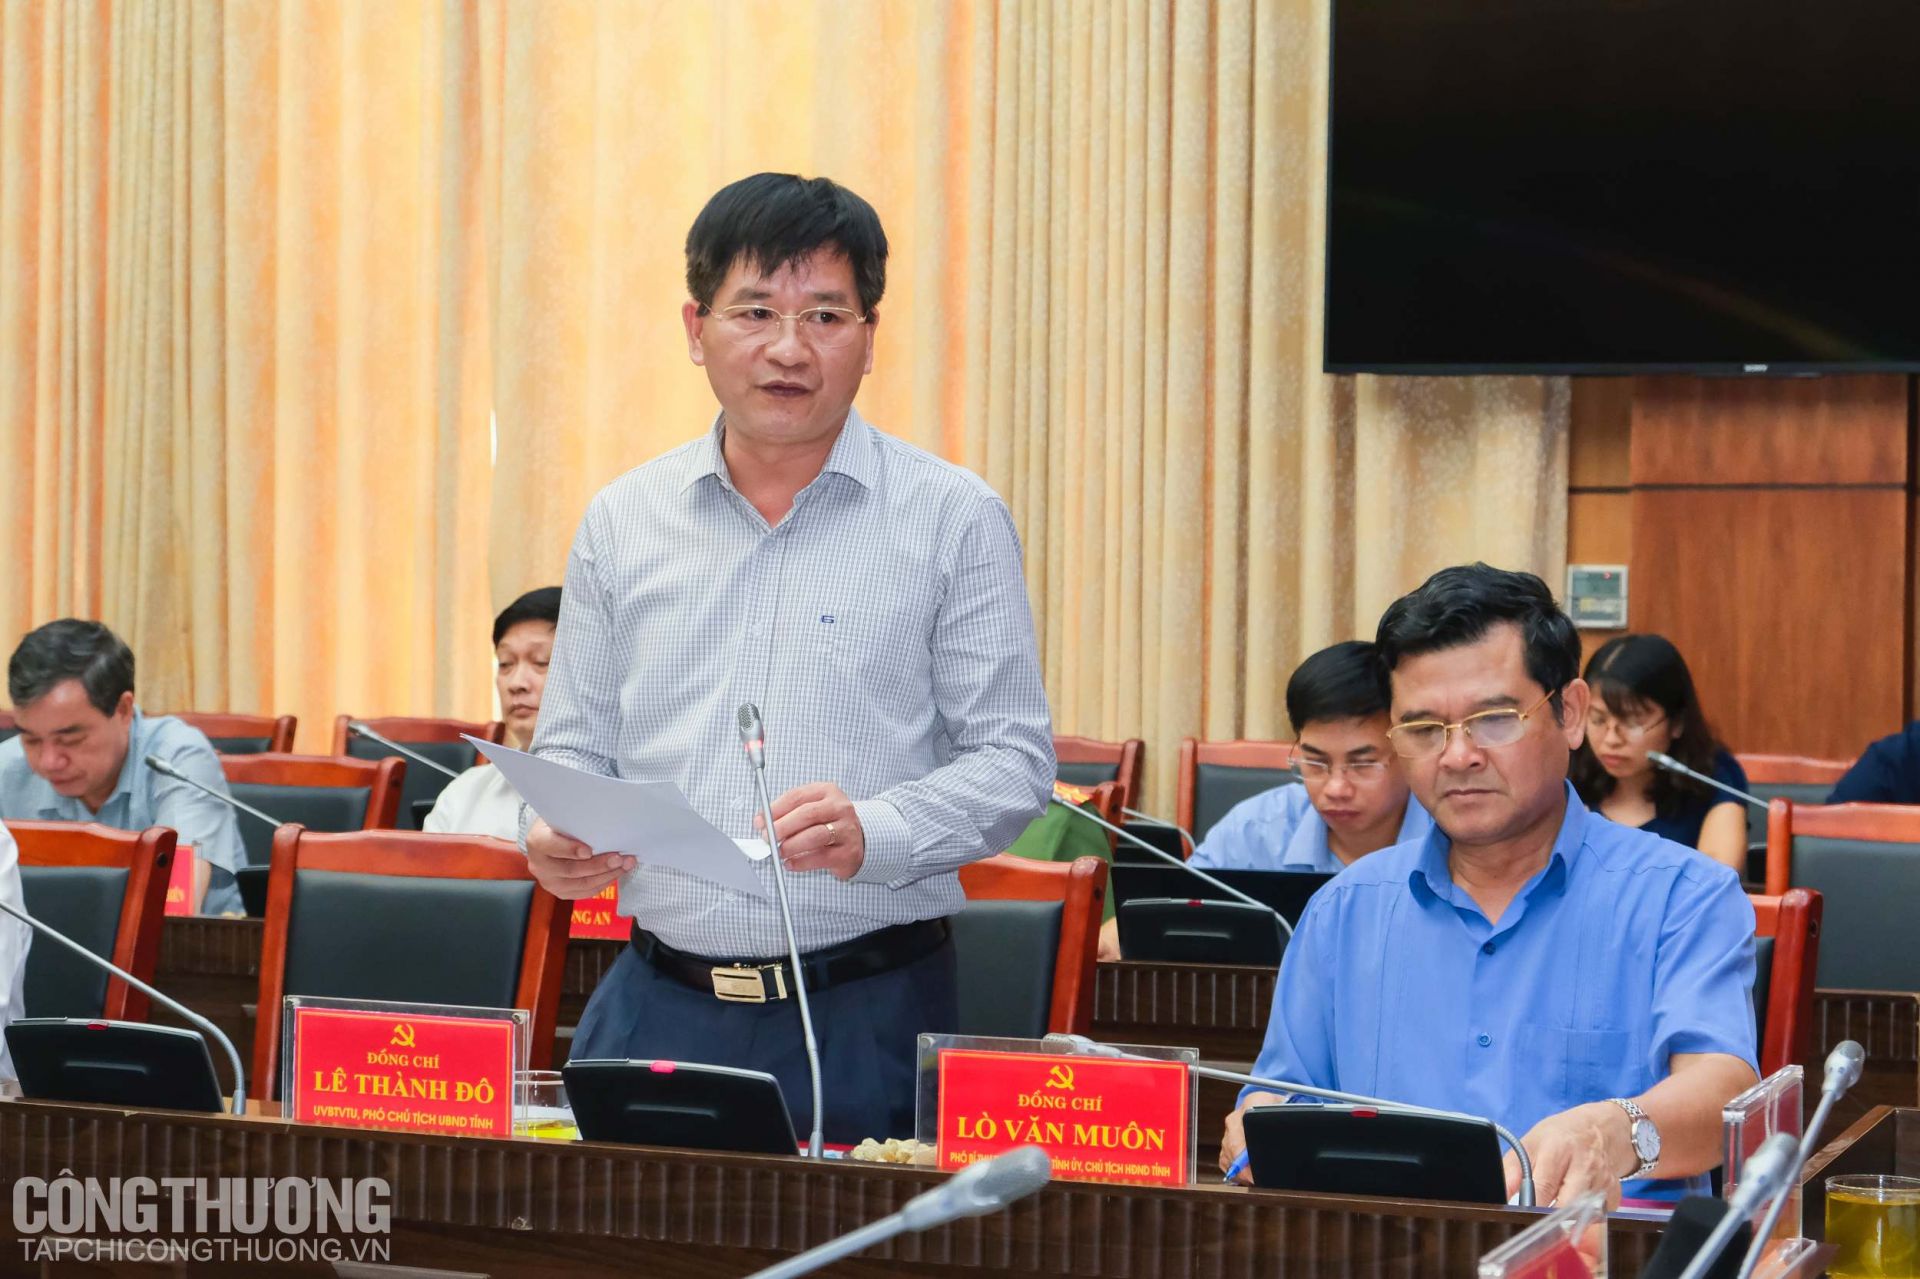 Ông Lê Thành Đô - Ủy viên Ban Thường vụ Trung ương, Phó chủ tịch thường trực UBND tỉnh Điện Biên